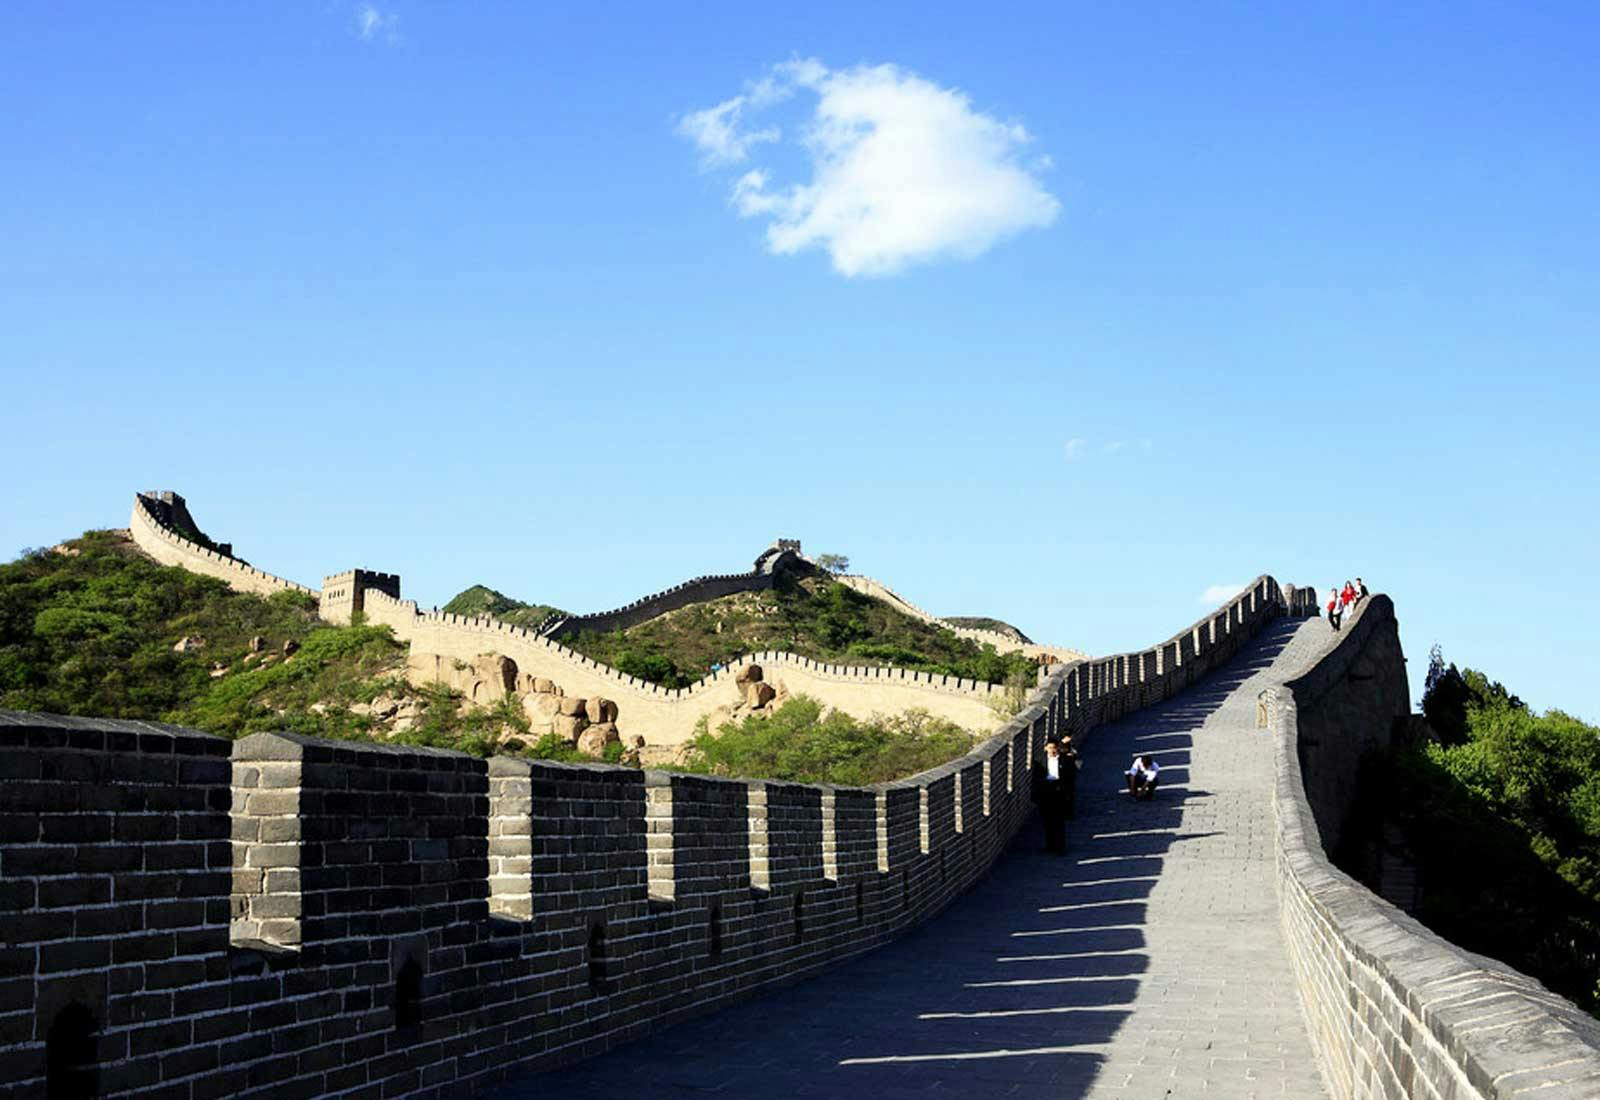 Excursão privada personalizável de um dia à Grande Muralha de Mutianyu em Pequim